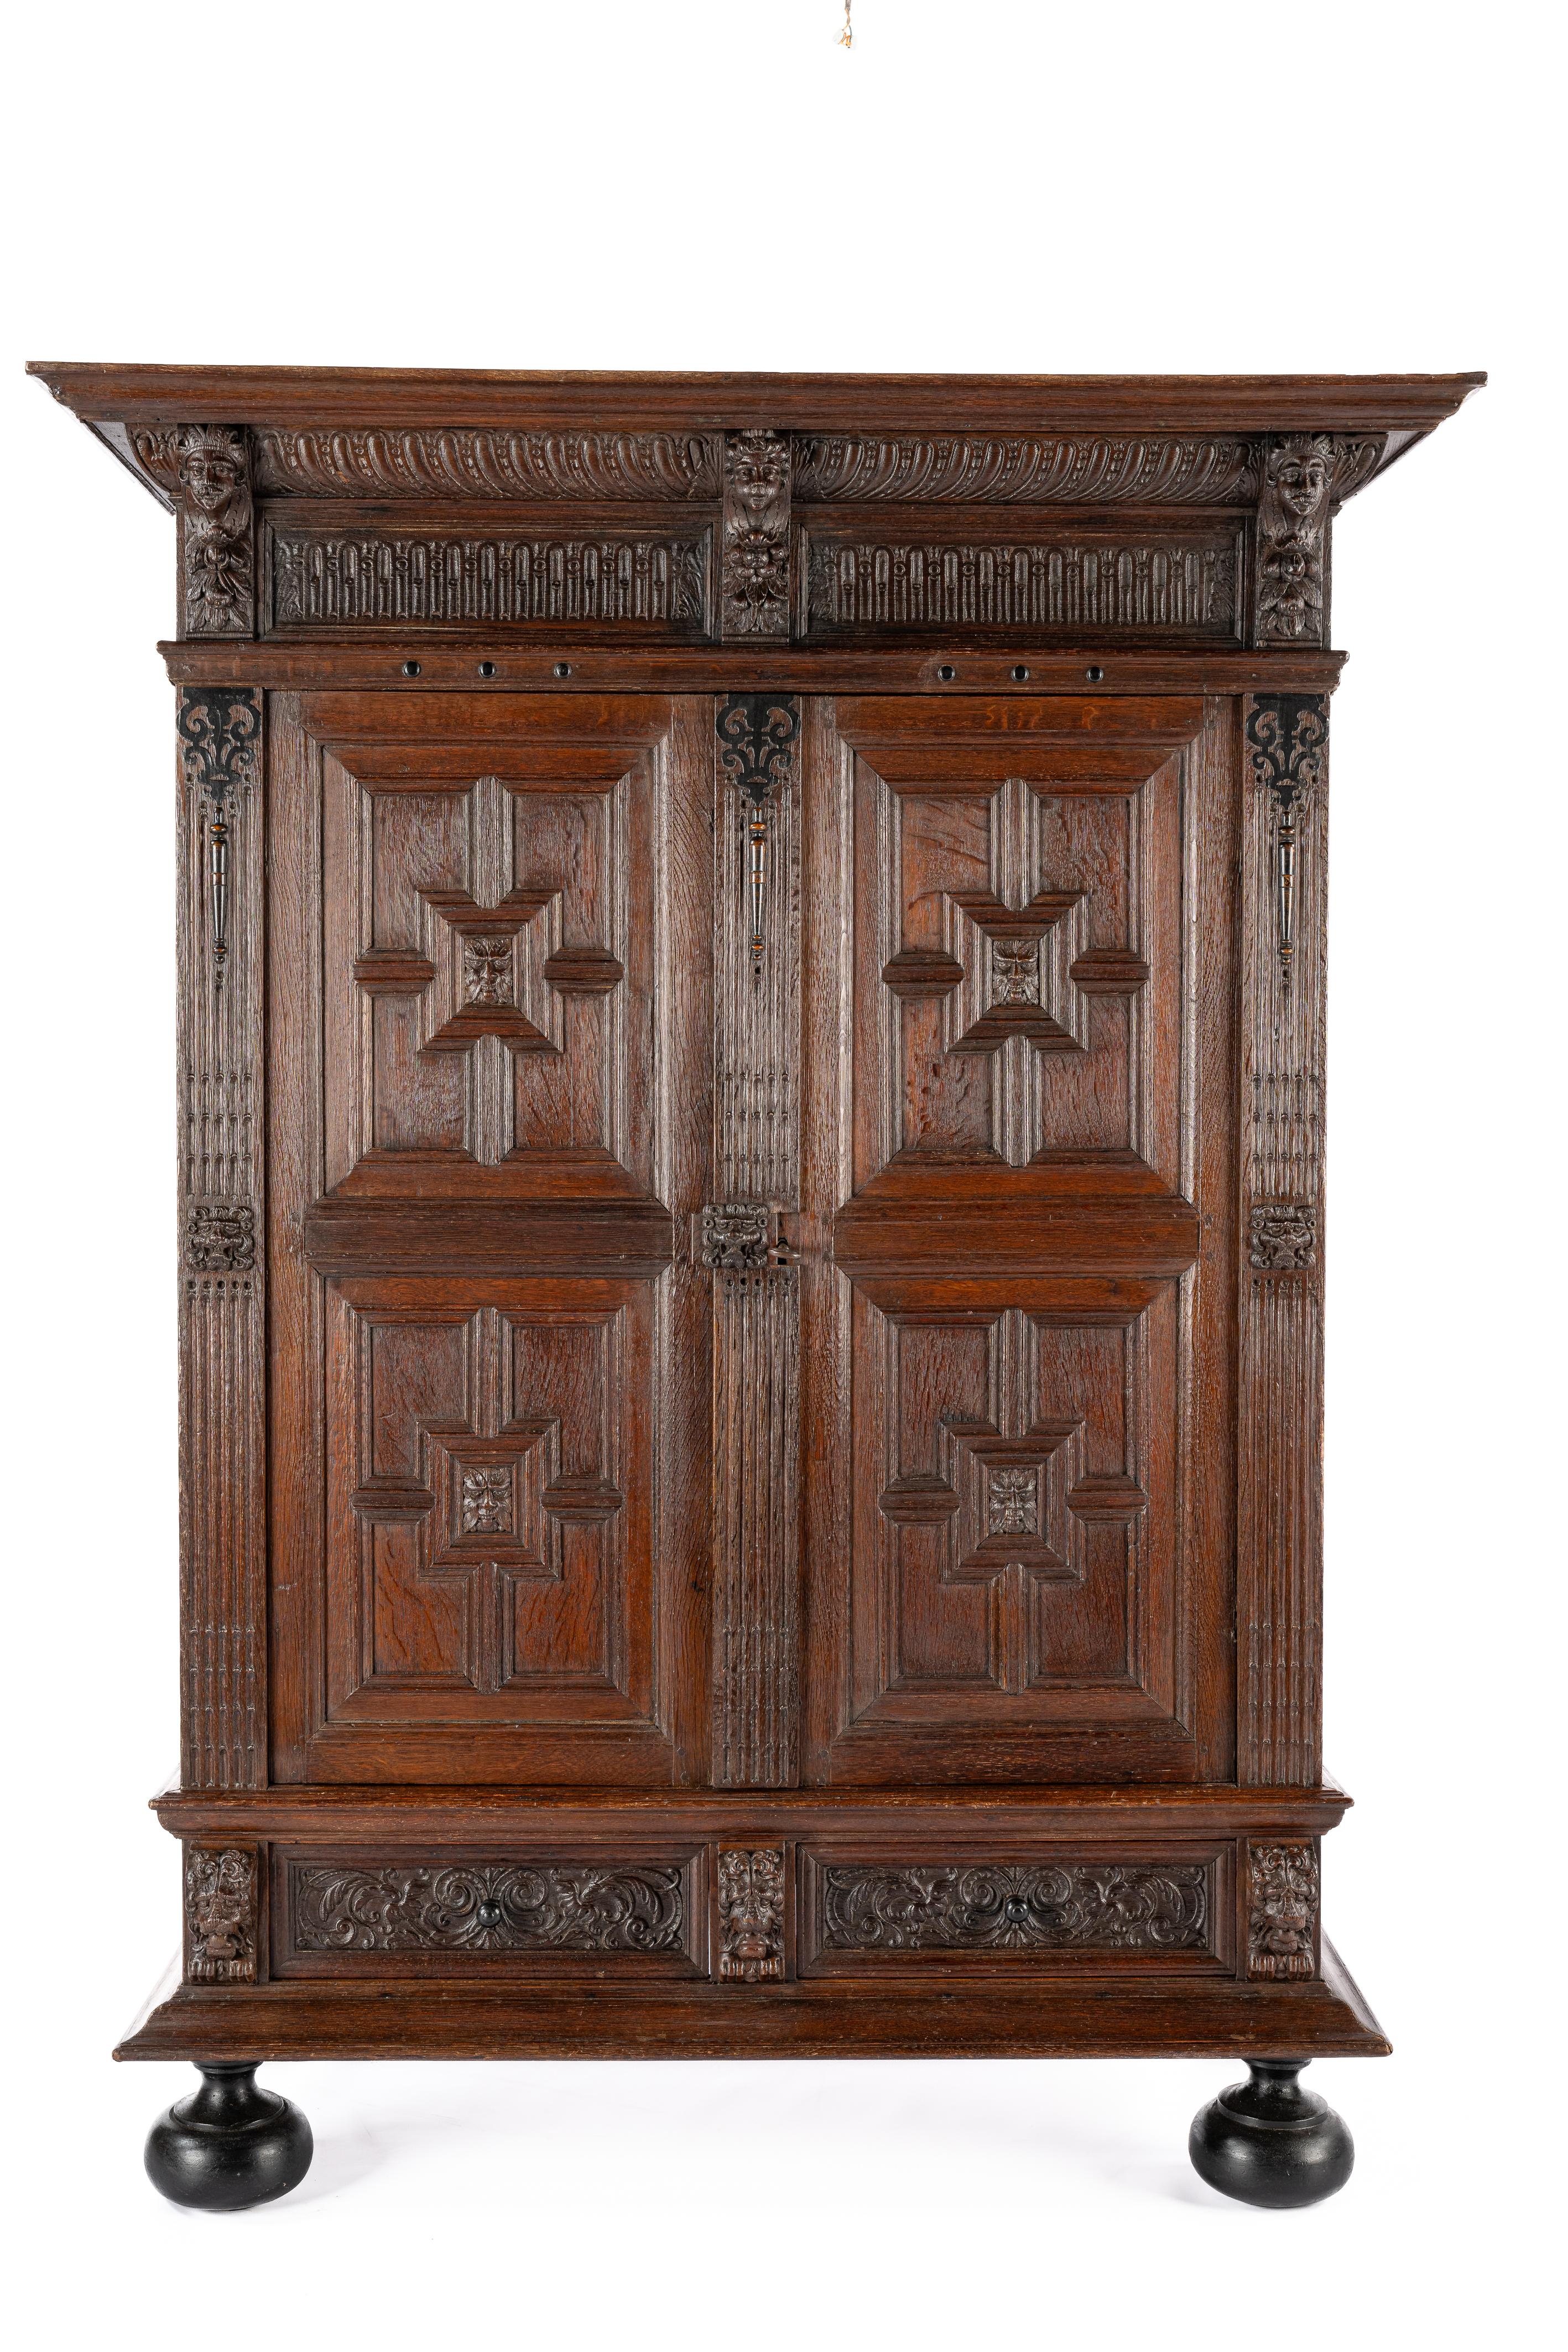 Cette armoire ancienne de style Renaissance hollandaise a été fabriquée dans le sud des Pays-Bas à la fin du XVIIIe siècle, vers 1780. Il s'agit d'un exemple typique de l'artisanat du meuble au cours de l'âge d'or hollandais. Fabriqué à partir du